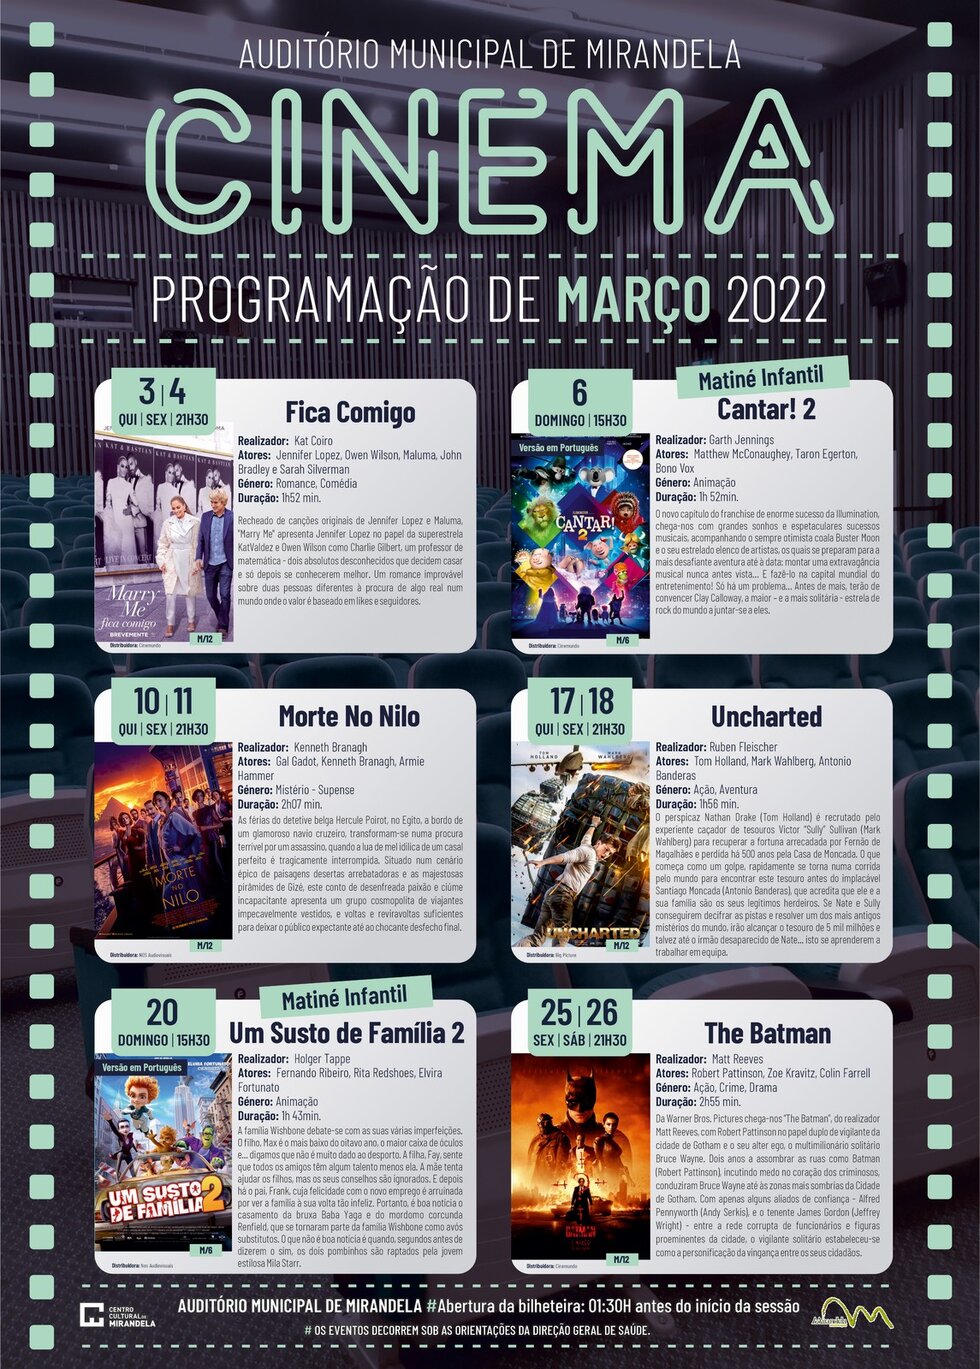 a3_cinema_programacao_marco_2022